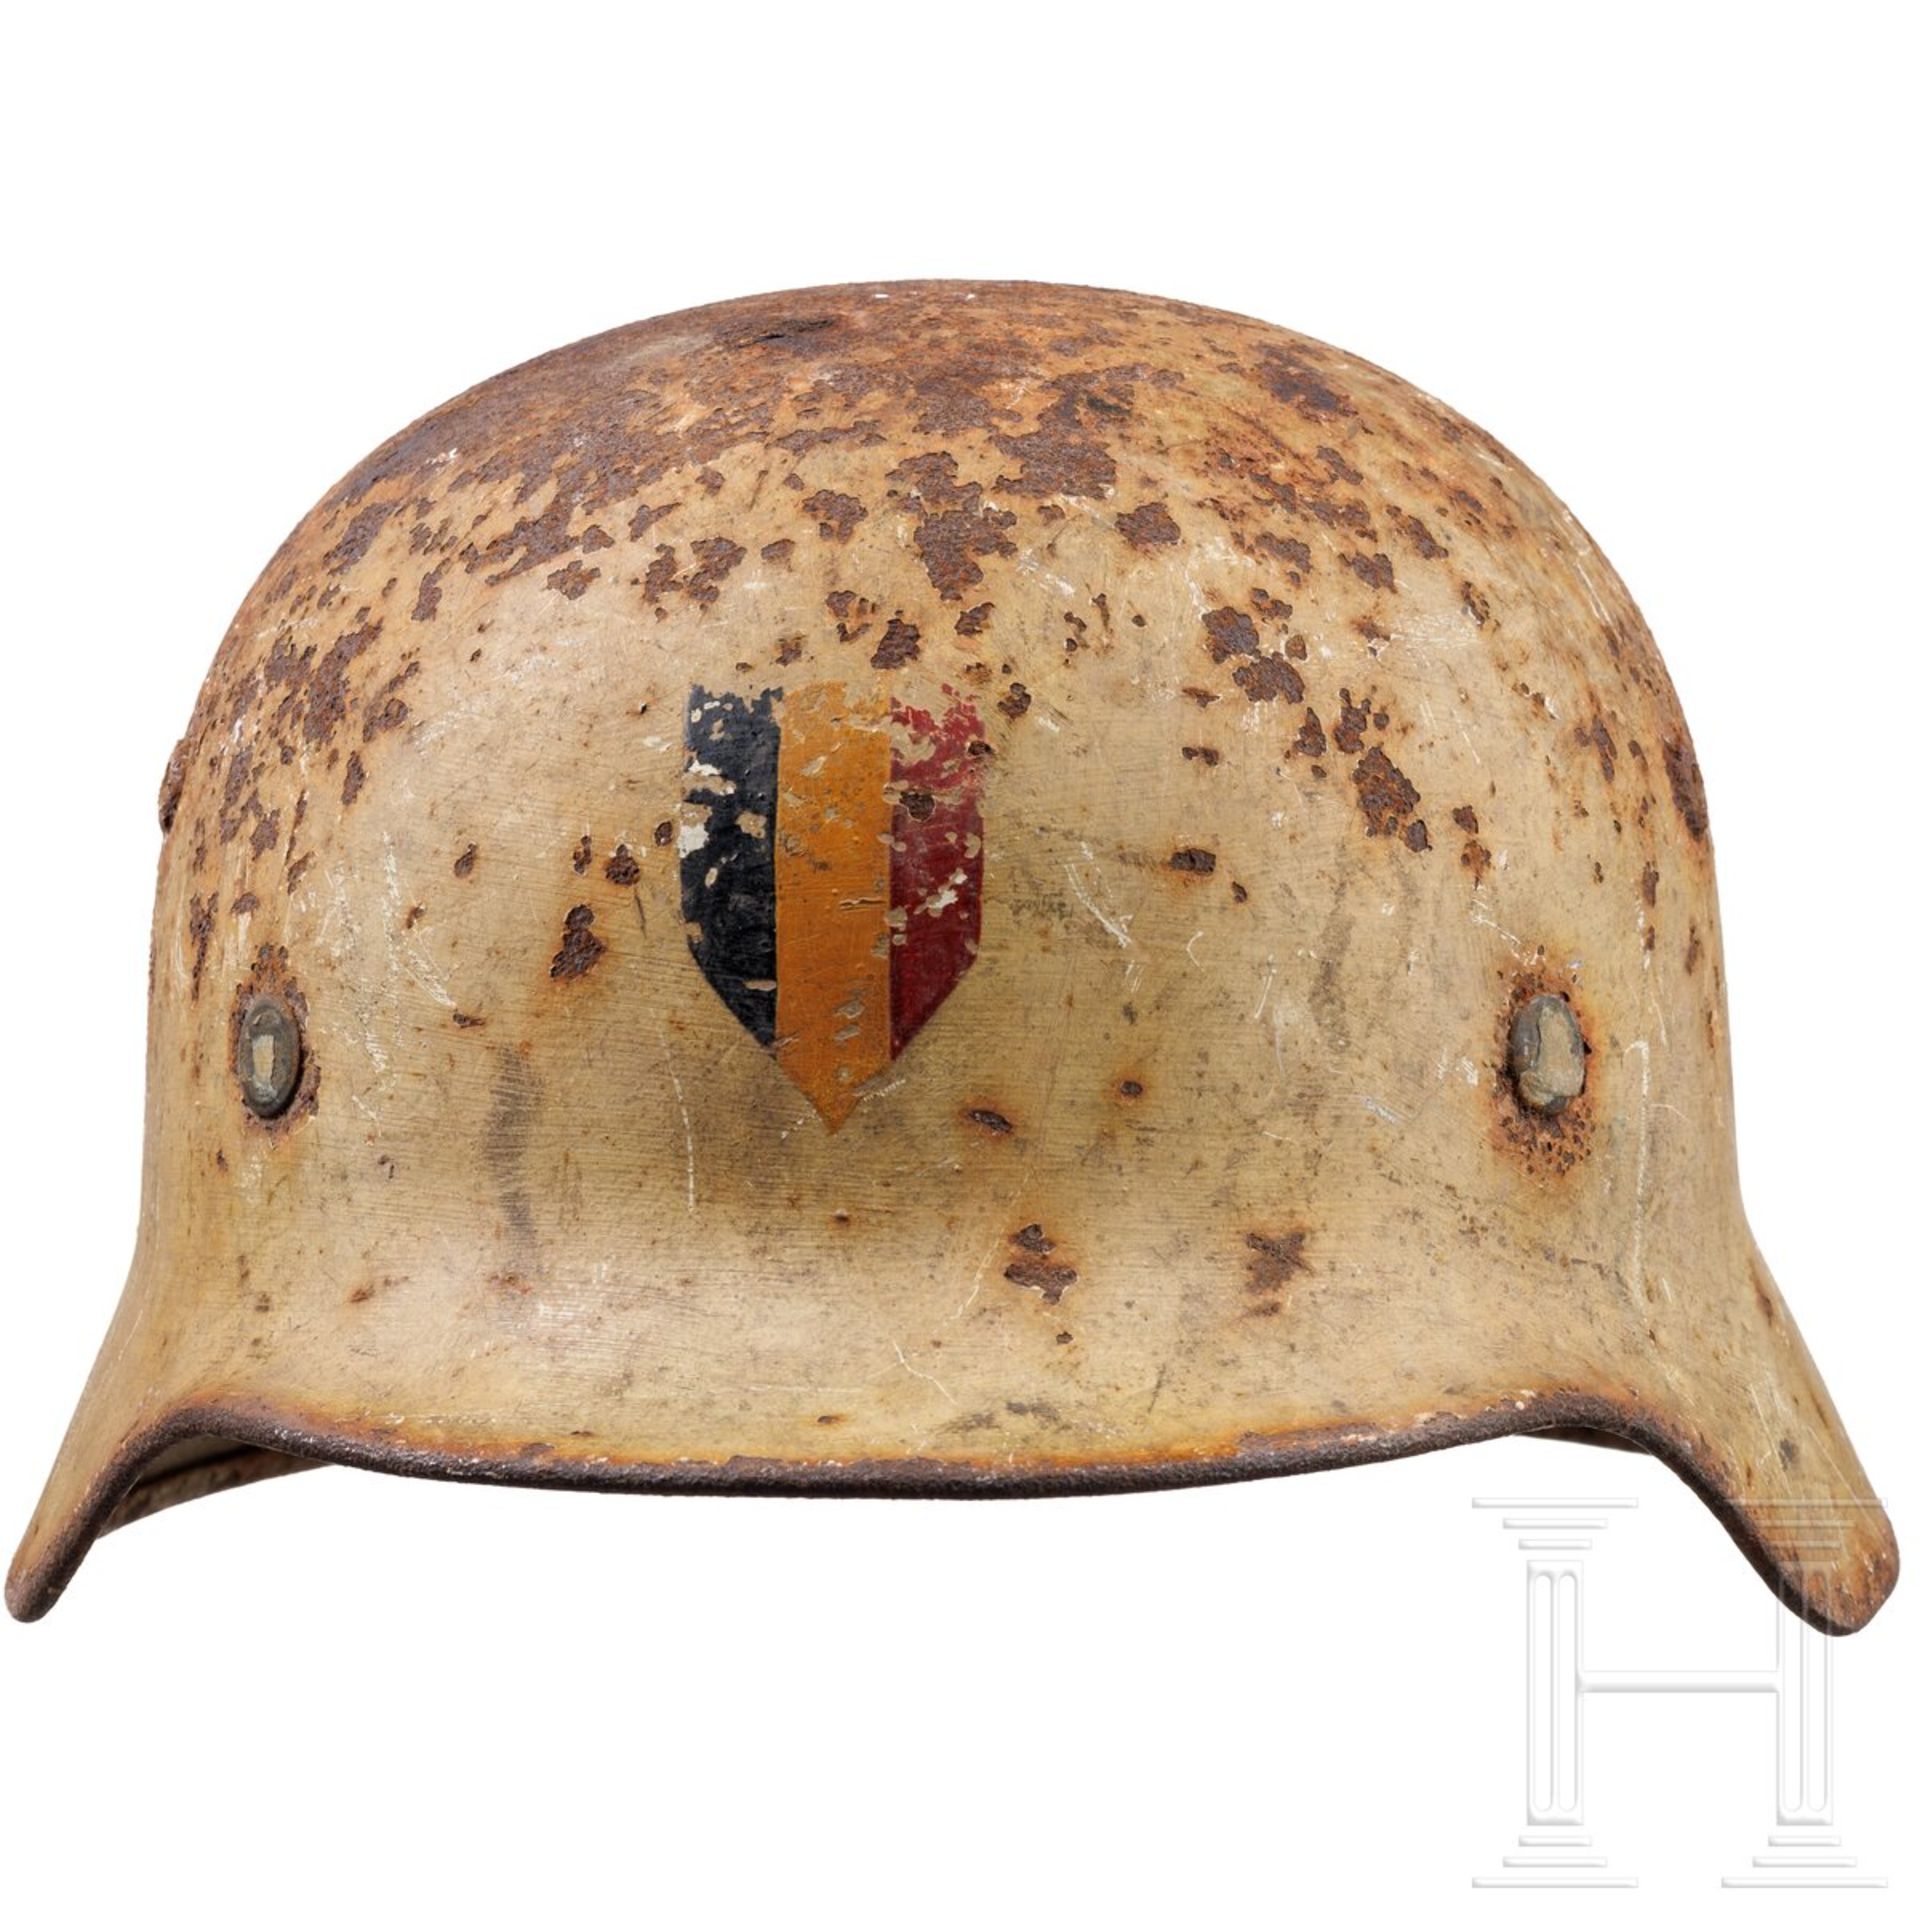 Stahlhelm M 35, deutsch, mit Wintertarnanstrich und belgischem Emblem - Bild 4 aus 6